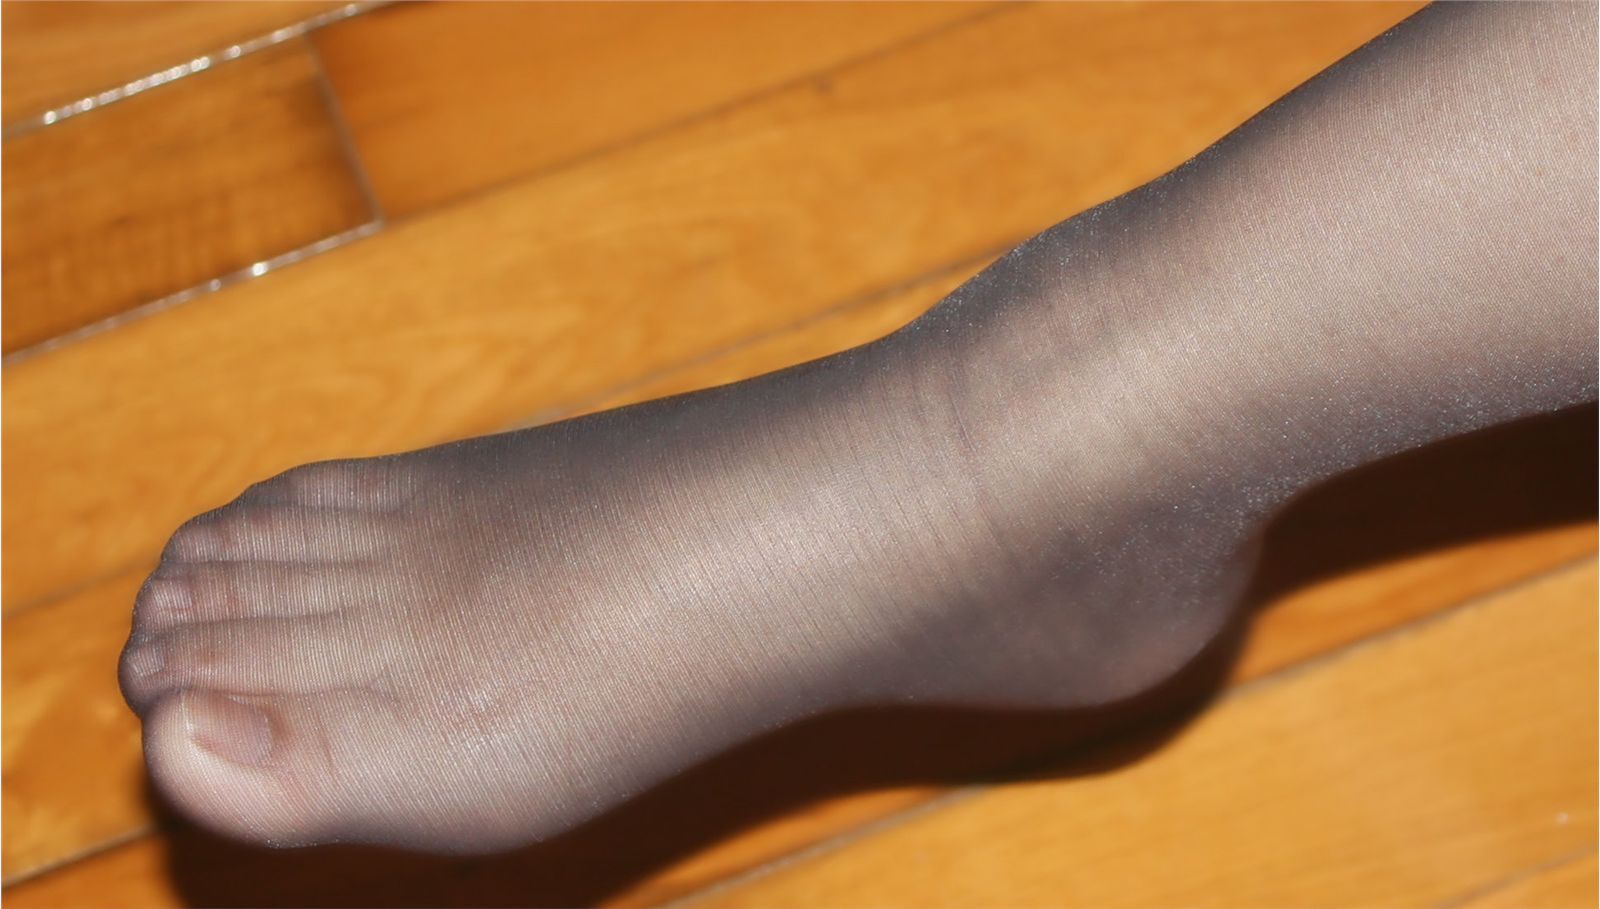 [网络收集] 2013.10.22 老婆穿超薄黑丝袜给我当脚模